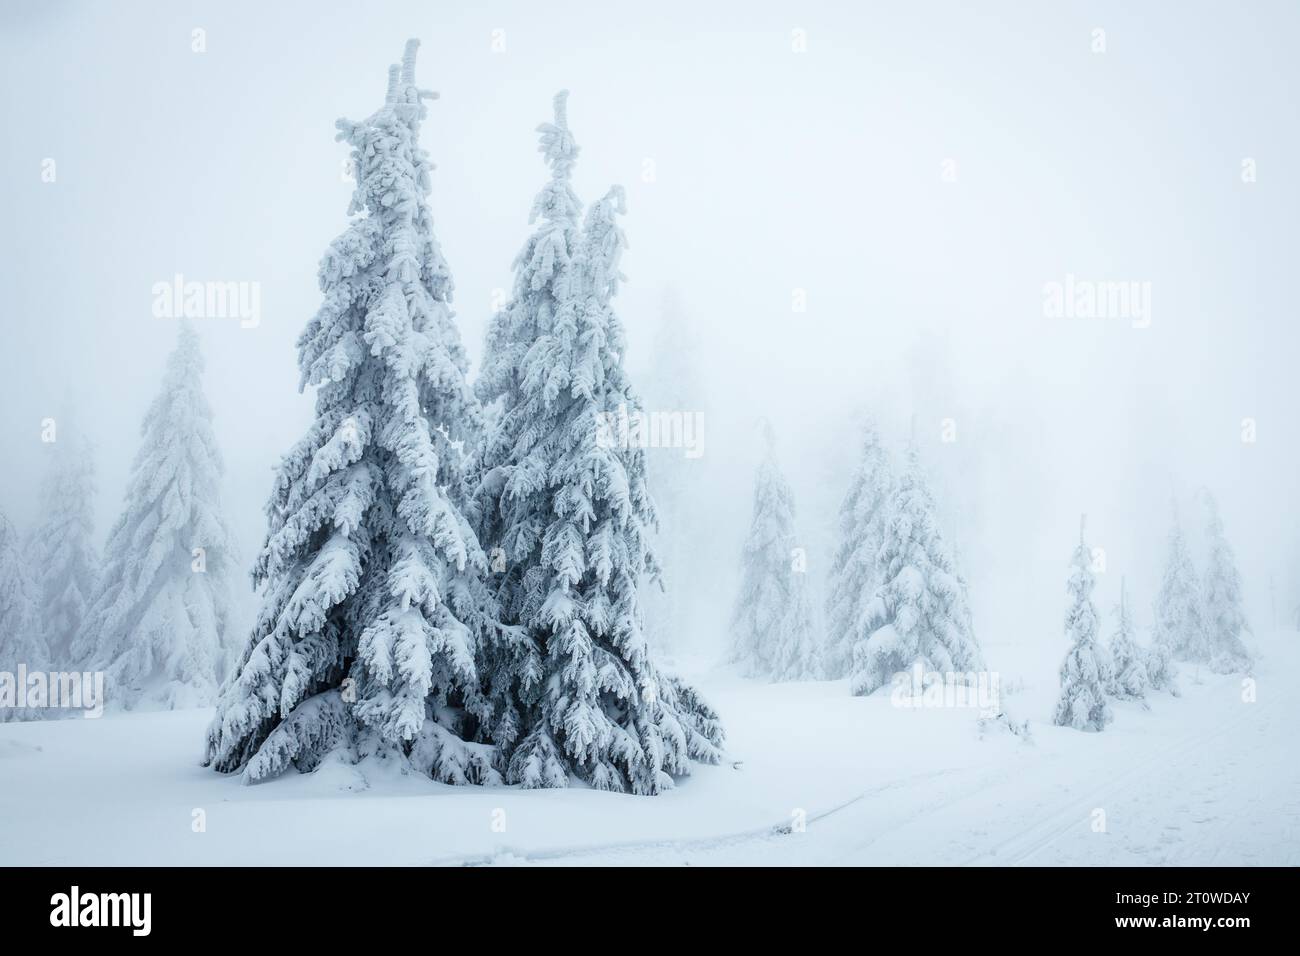 Forêt hivernale dans le brouillard. Épinettes couvertes de neige avec brume gelée. Temps froid en montagne Banque D'Images